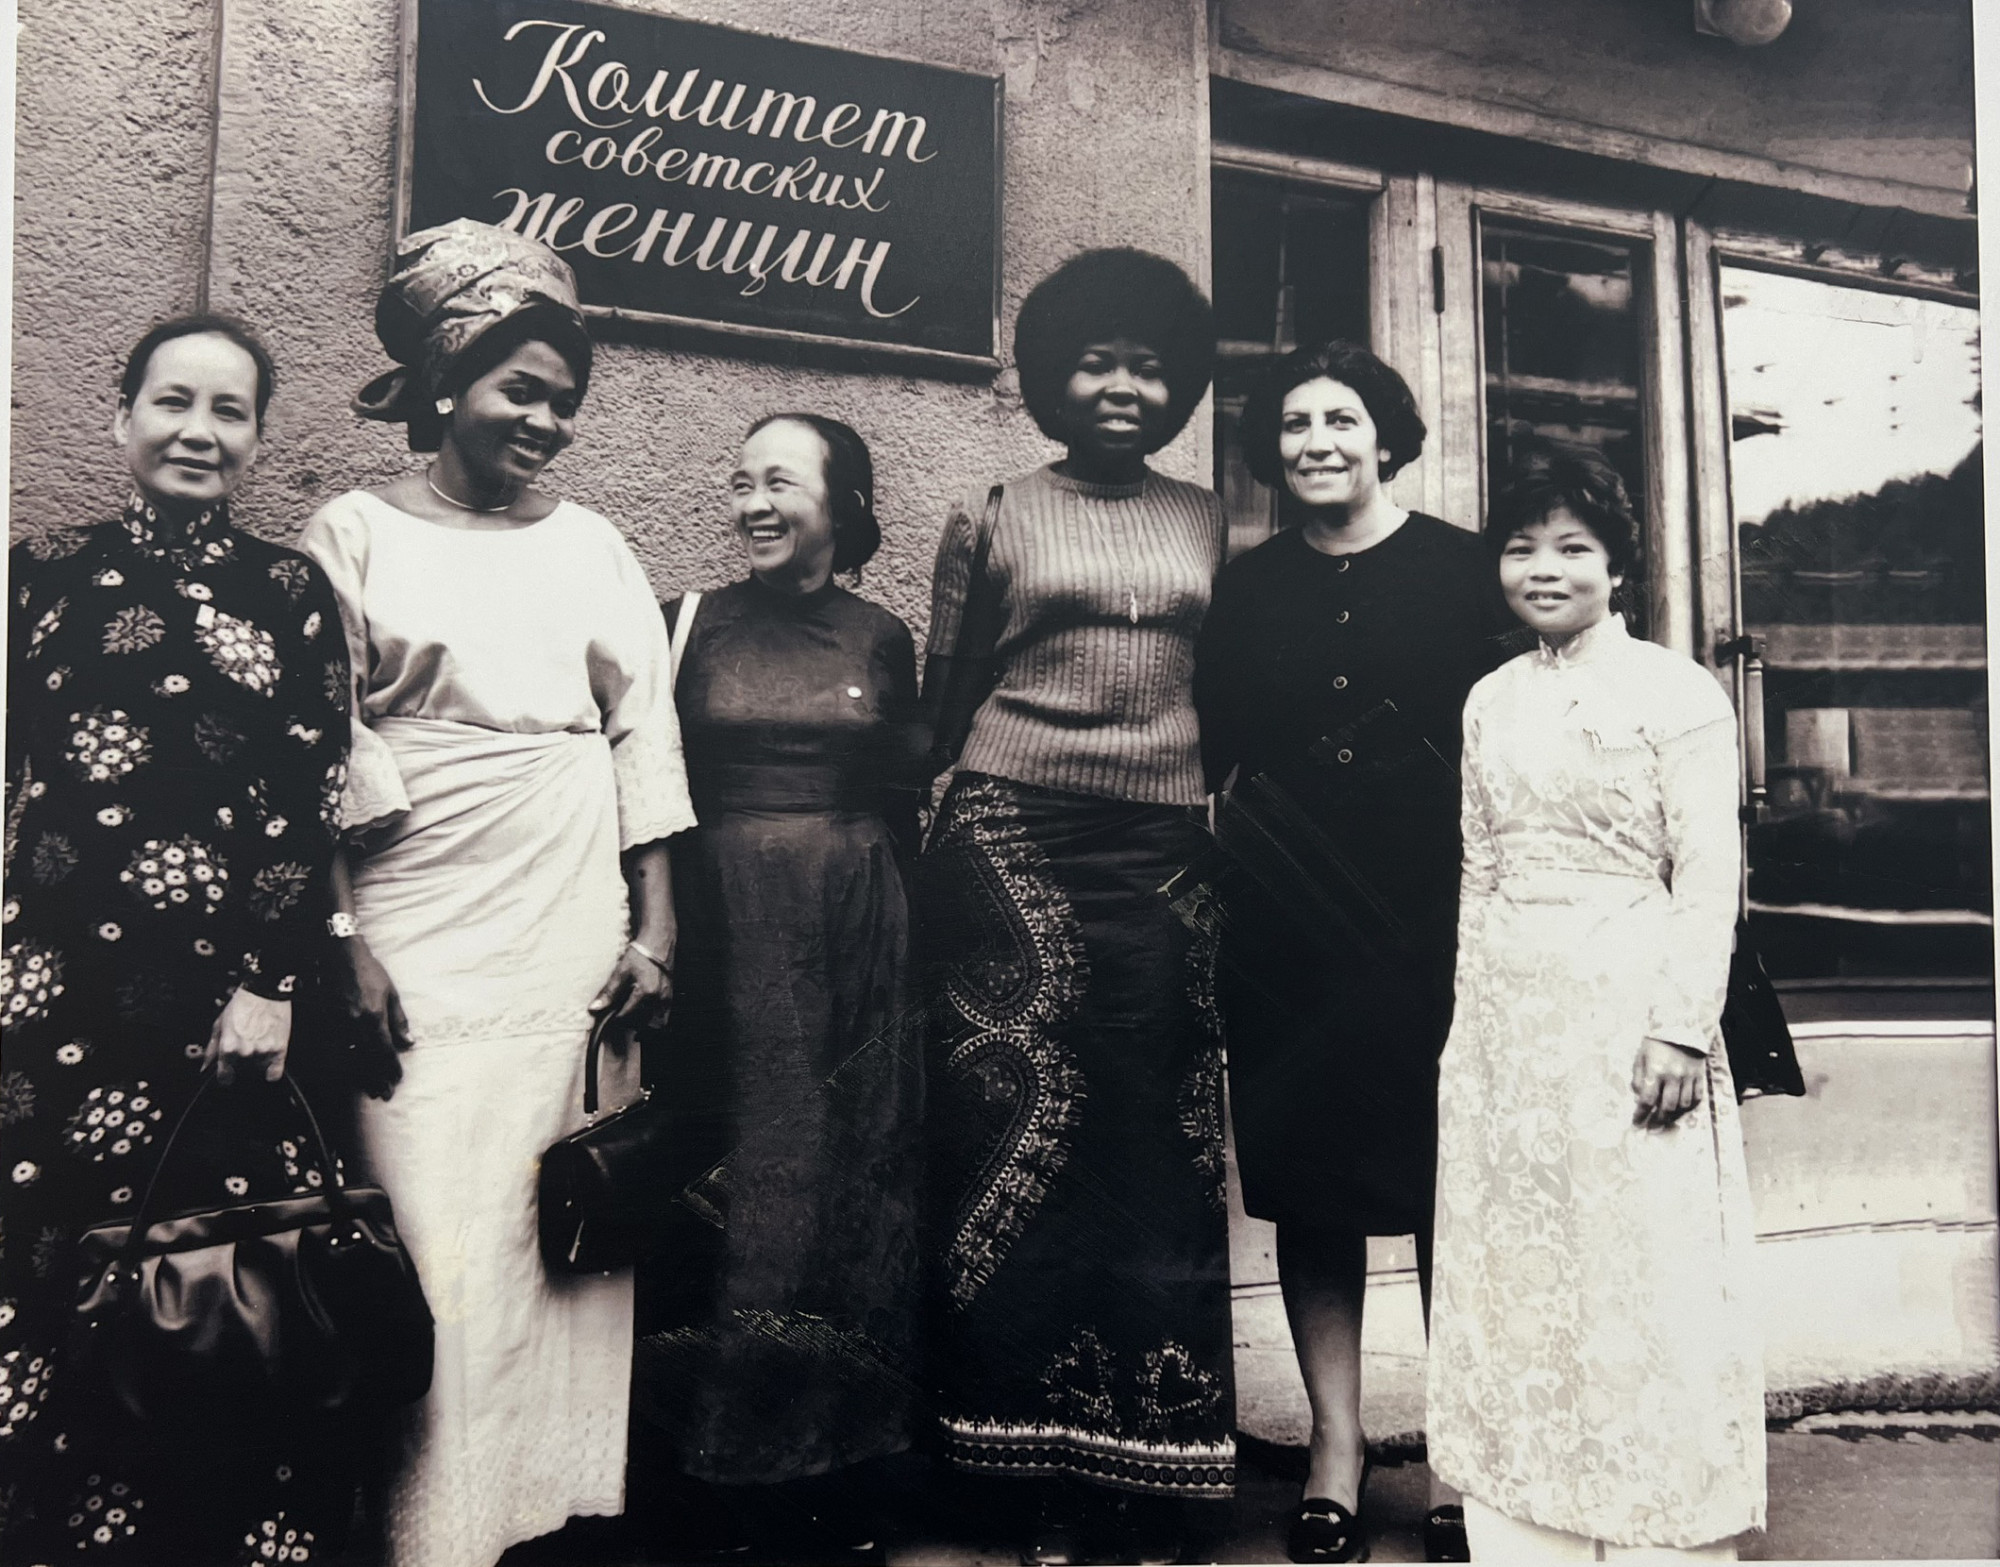 Đoàn phụ nữ Việt Nam trong chuyến thăm ngoại giao ở thủ đô Moscow (Nga) vào năm 1969. Thời điểm này những chiếc áo dài với phần eo nhỏ là mốt thịnh hành.